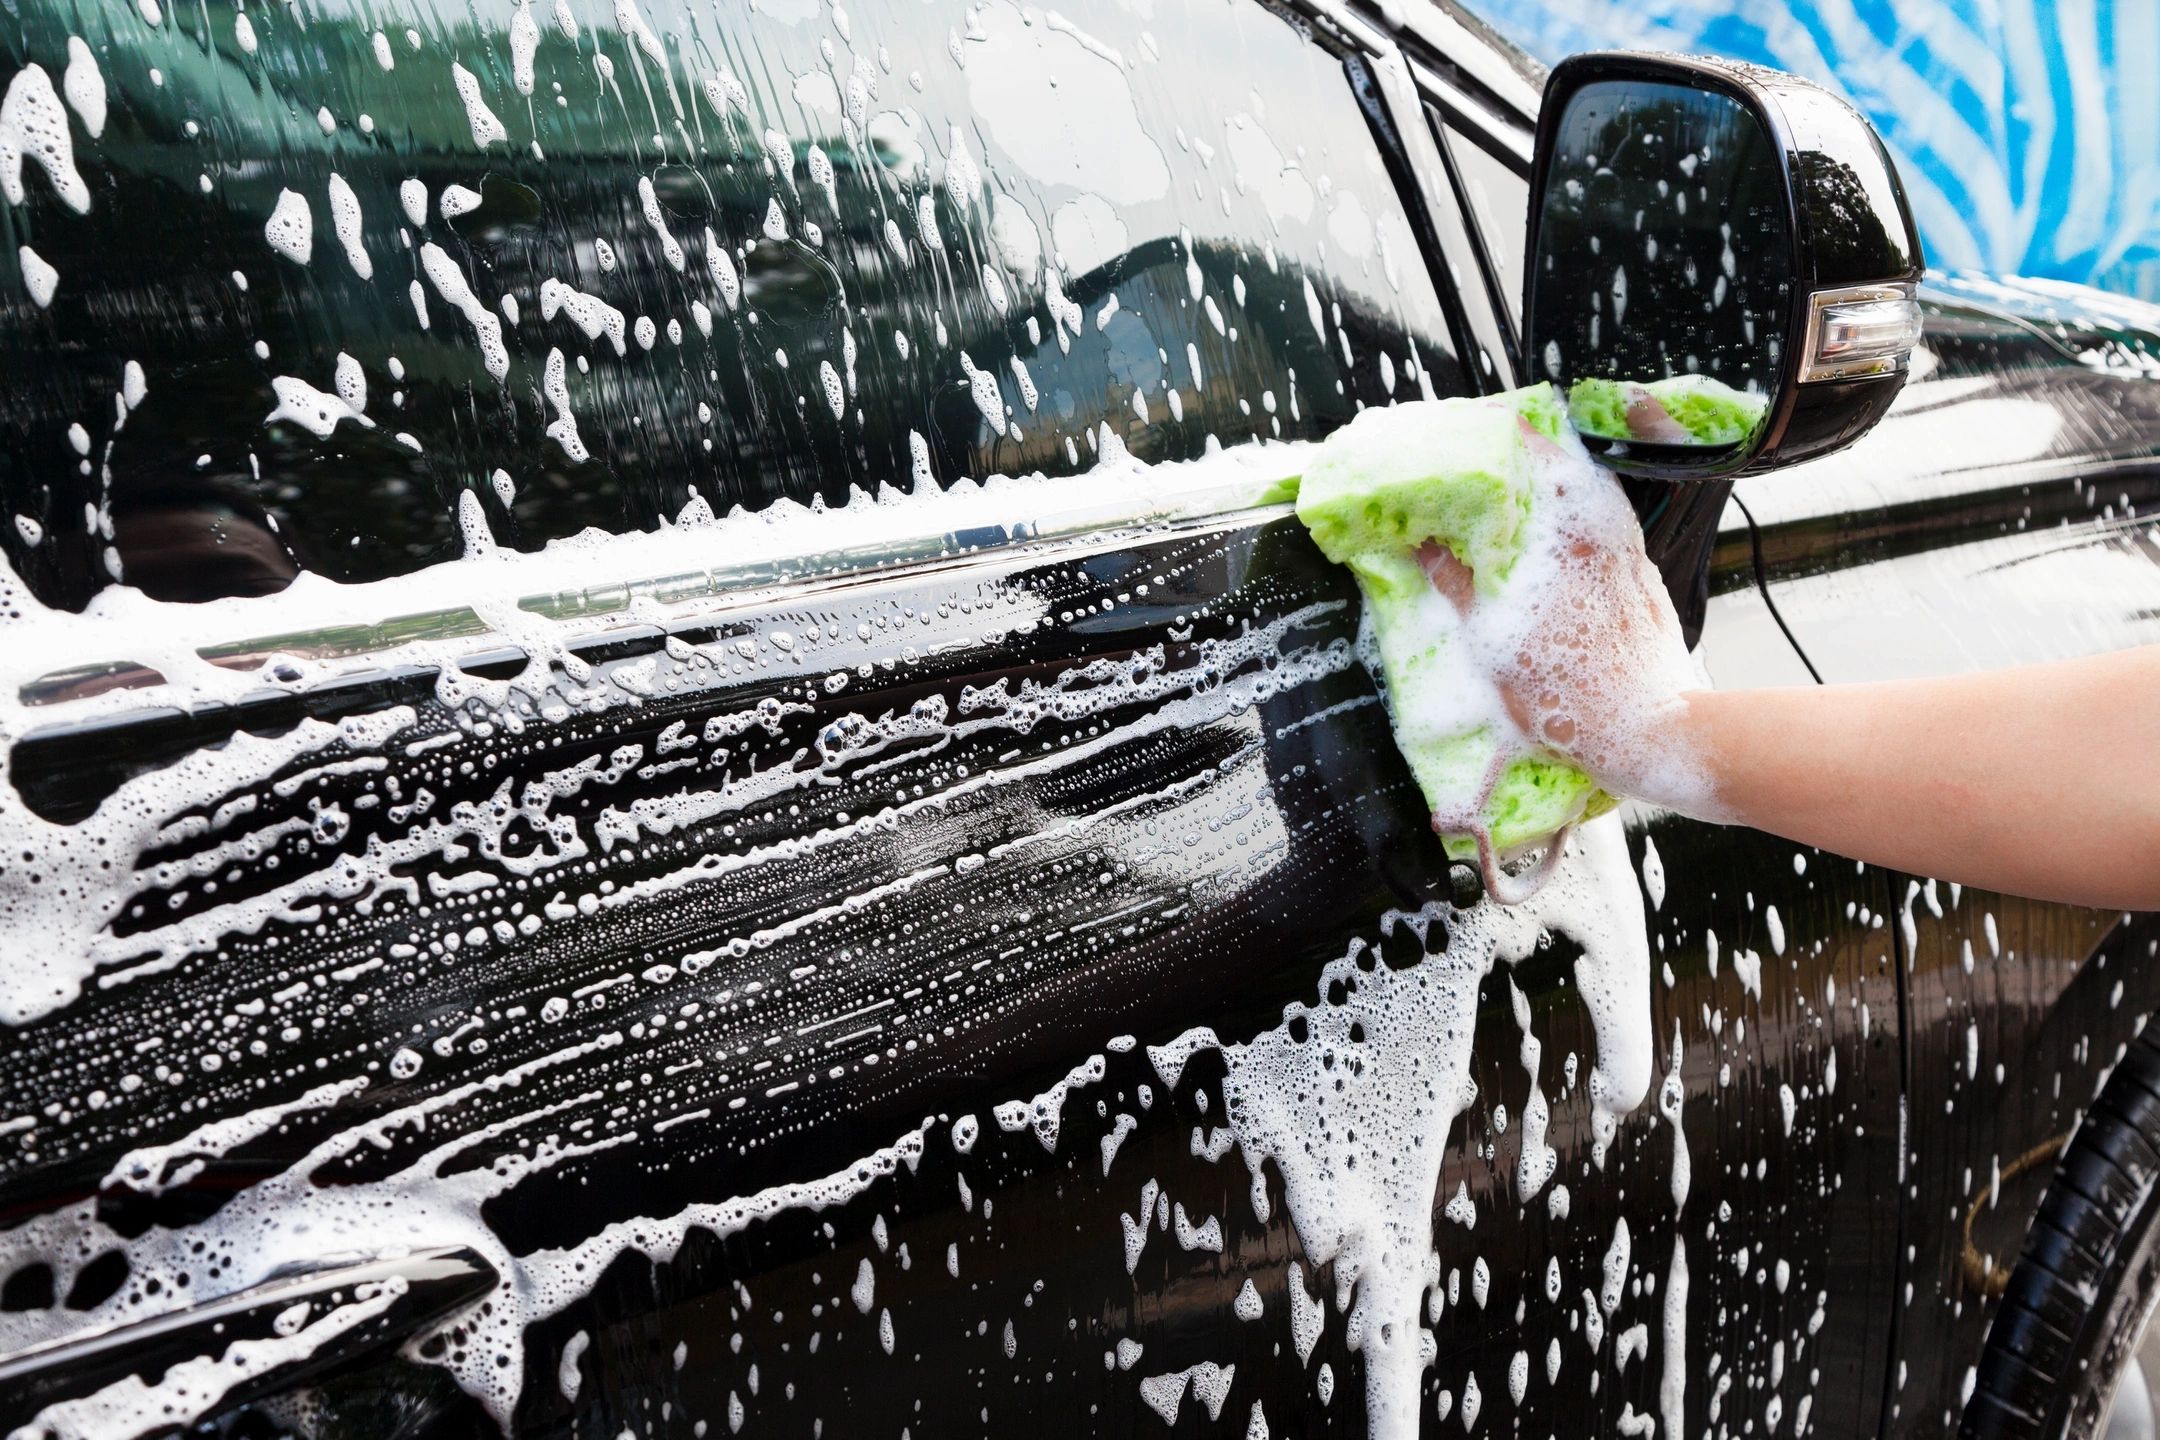 Full-Service Auto Wash